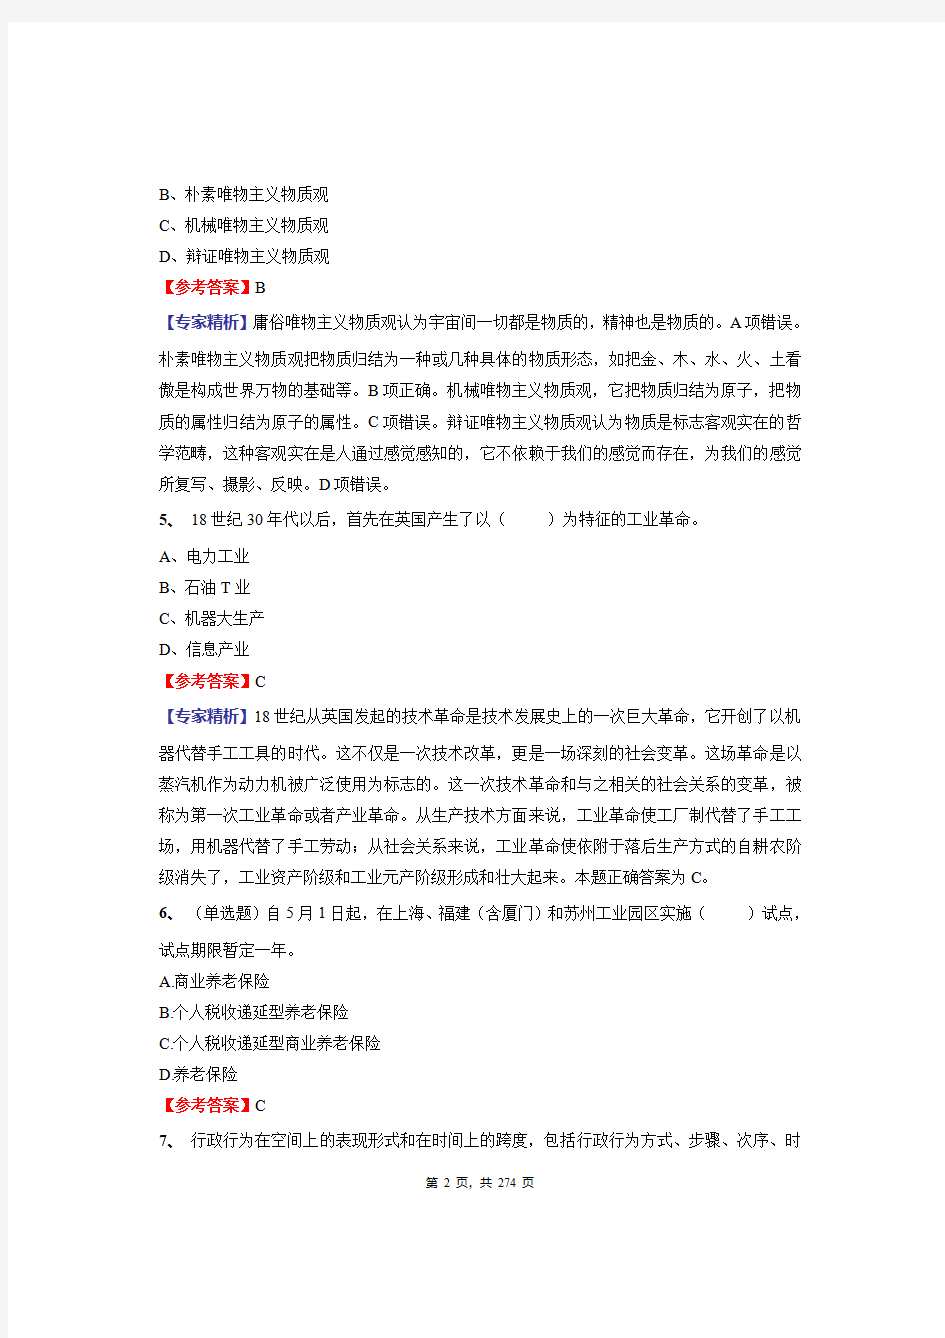 2020年湖南省事业单位招聘考试《公共基础知识》绝密真题库及答案解析